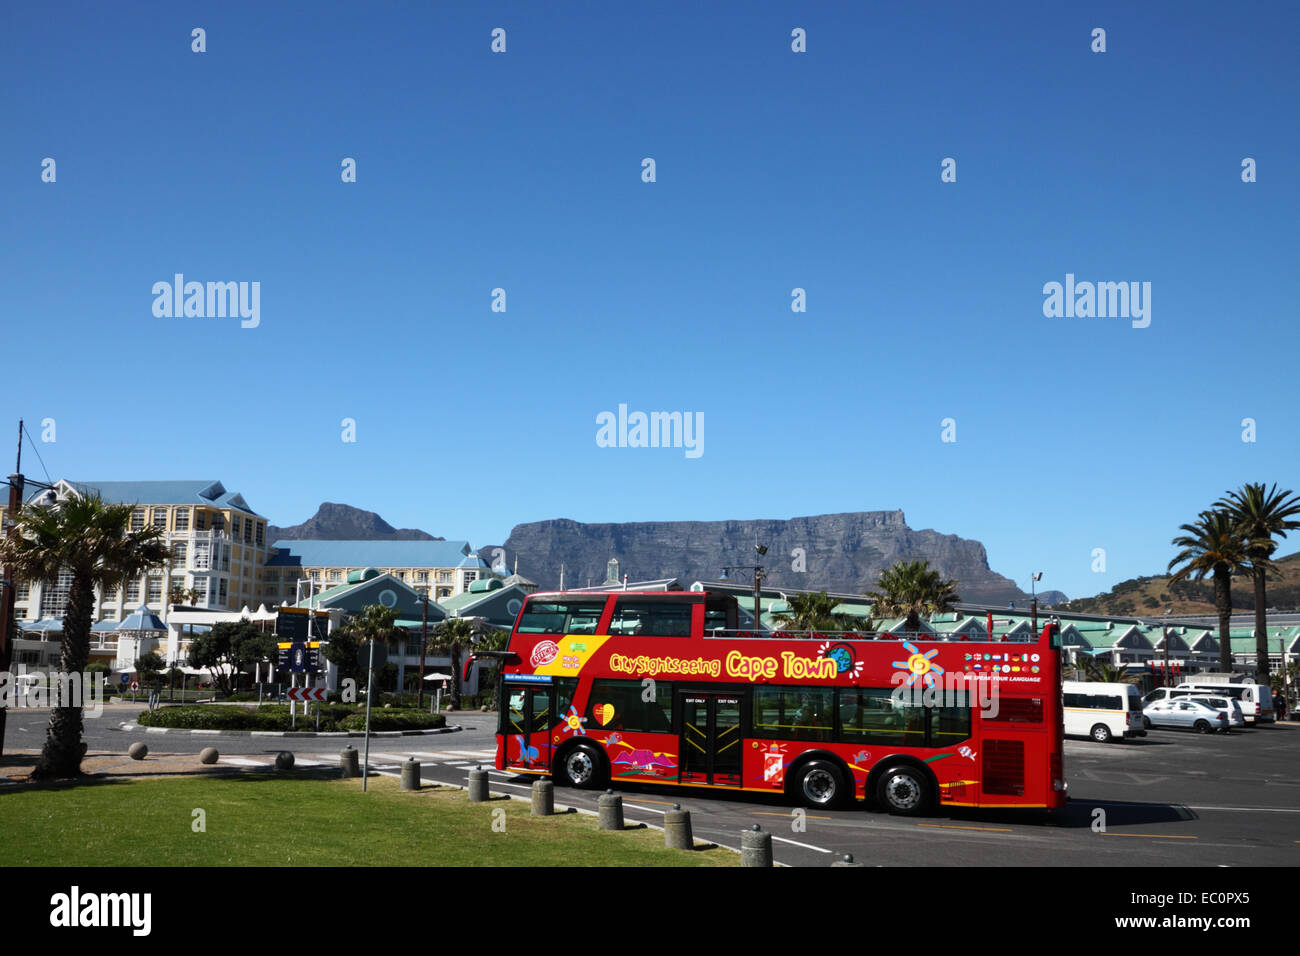 "Bus-Tour vorbei an Table Bay Hotel, Victoria und Alfred Waterfront mit Tafelberg im Hintergrund, Kapstadt. Stockfoto